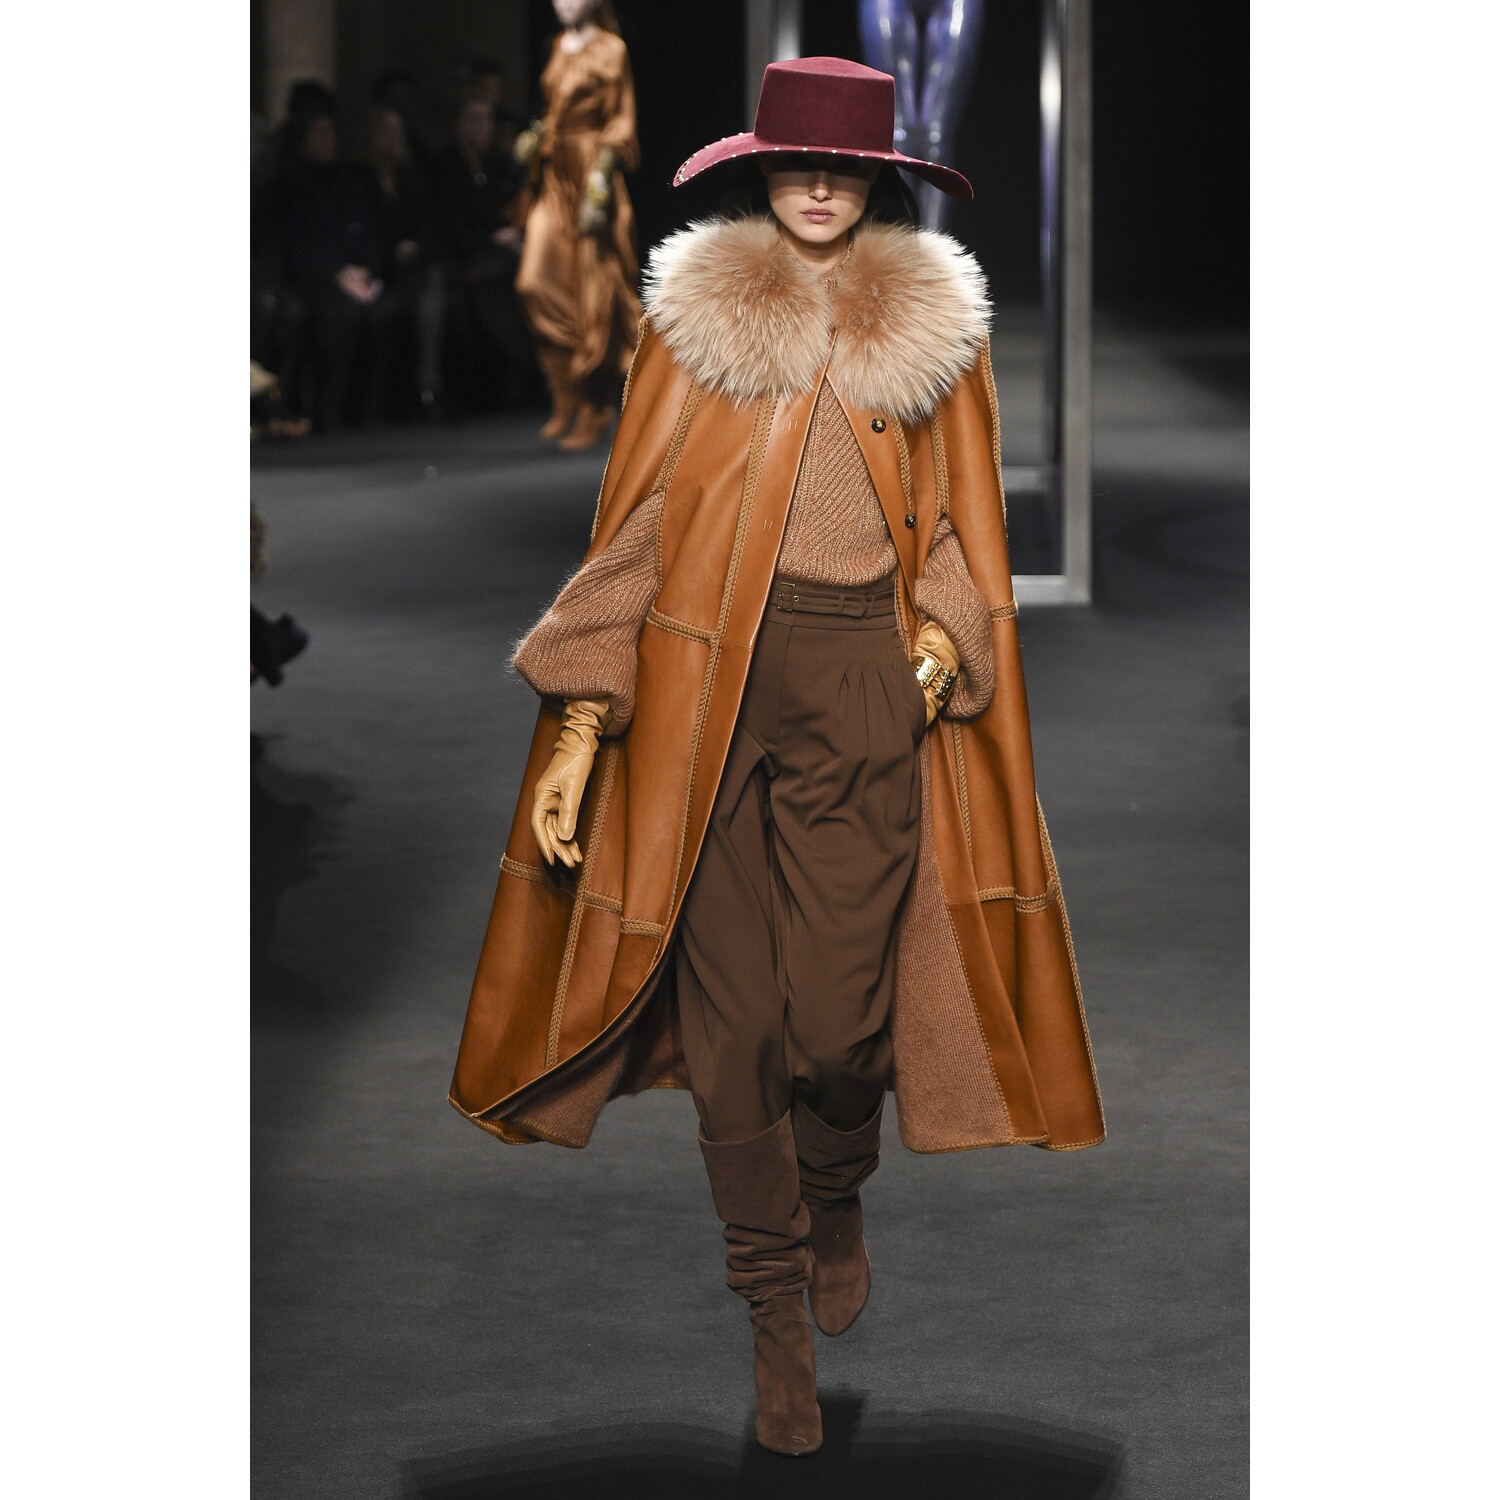 Фото Alberta Ferretti Fall 2018 Ready-to-Wear , Alberta Ferretti осень зима 2018 , Fashion show , неделя моды в Милане , MFW , Mainstyles